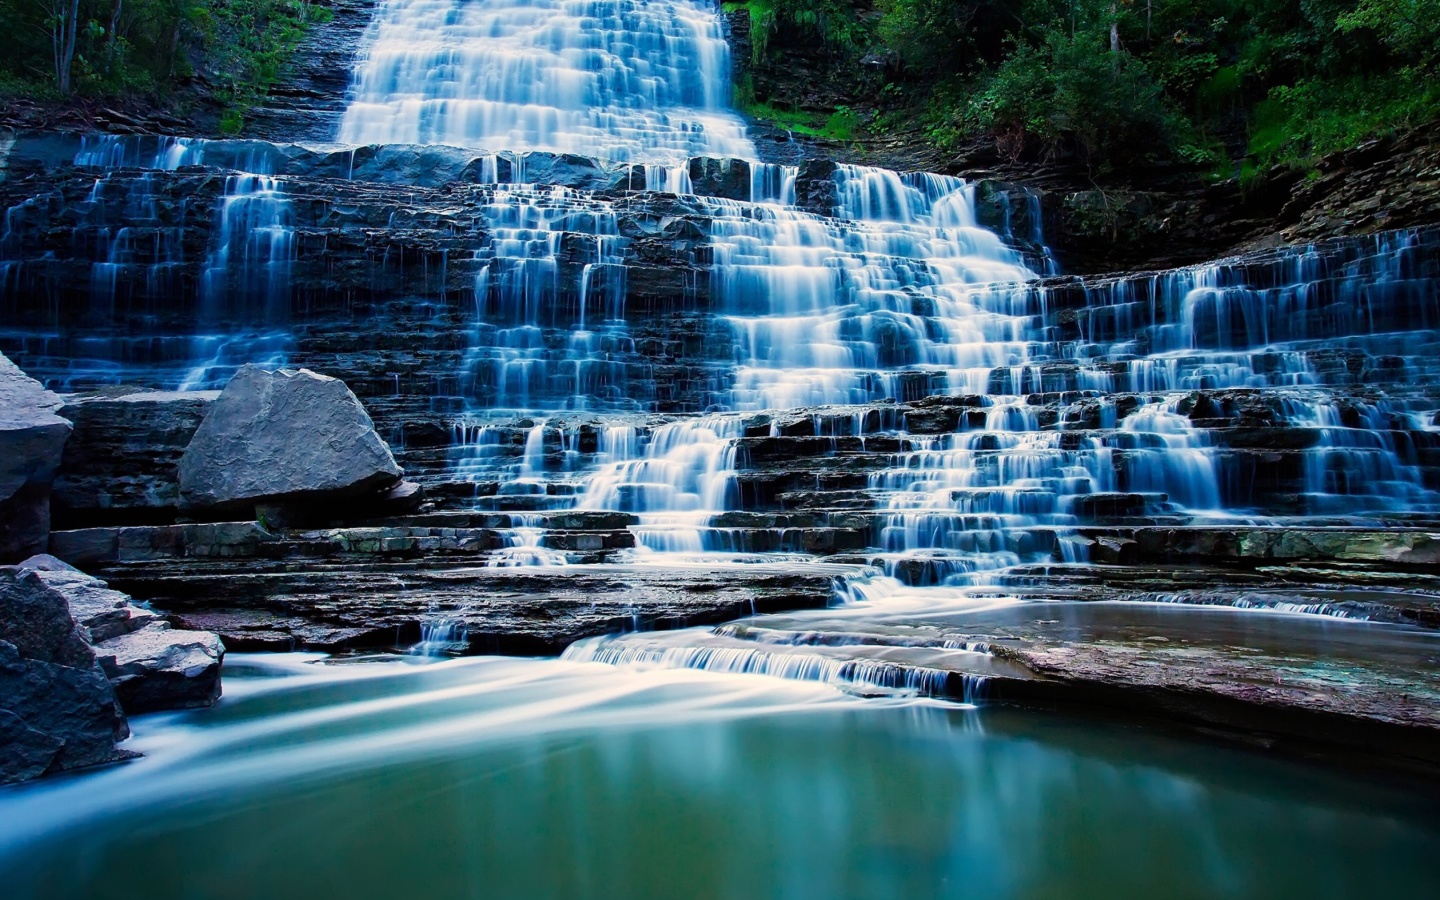 Das Albion Falls cascade waterfall in Hamilton, Ontario, Canada Wallpaper 1440x900